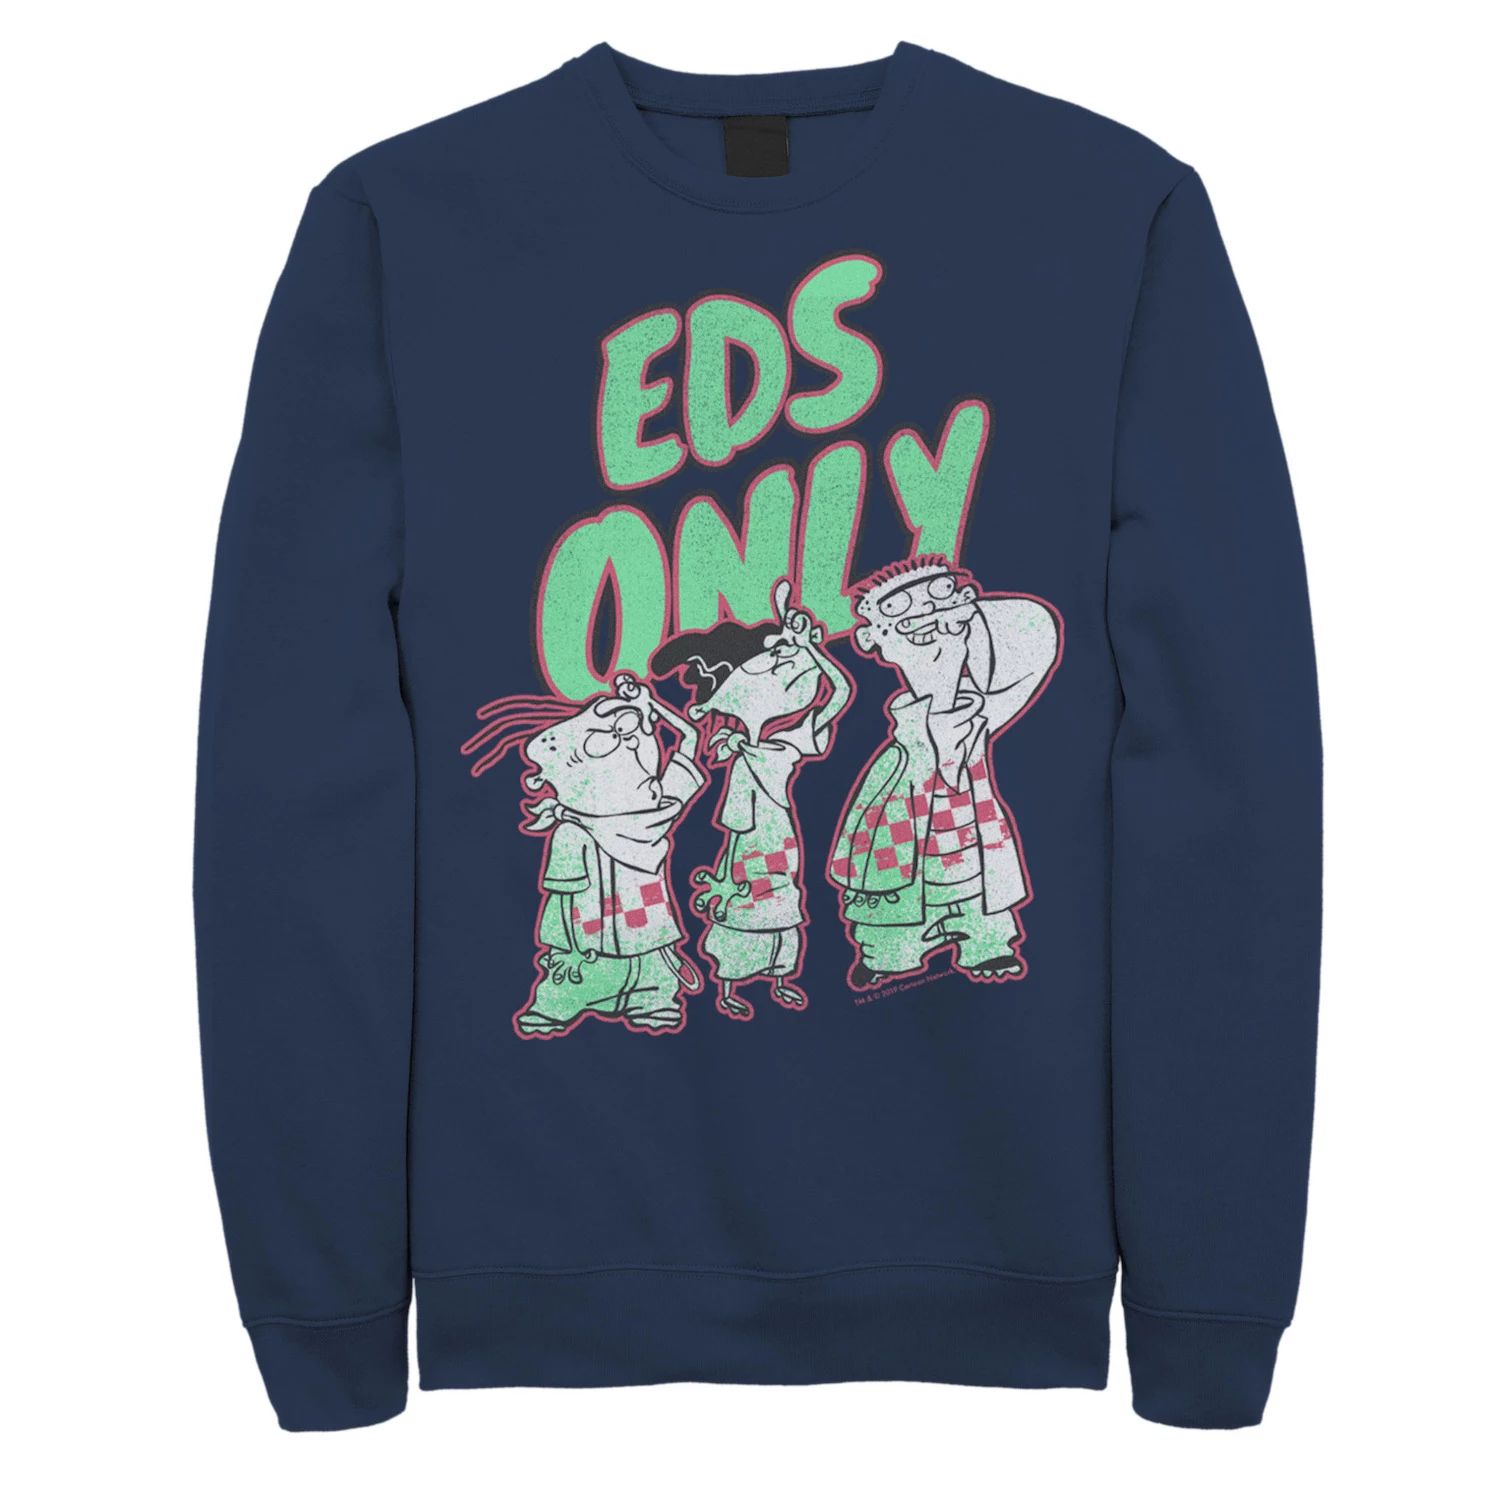 Мужской свитшот Ed, Edd n Eddy Licensed Character, синий цена и фото